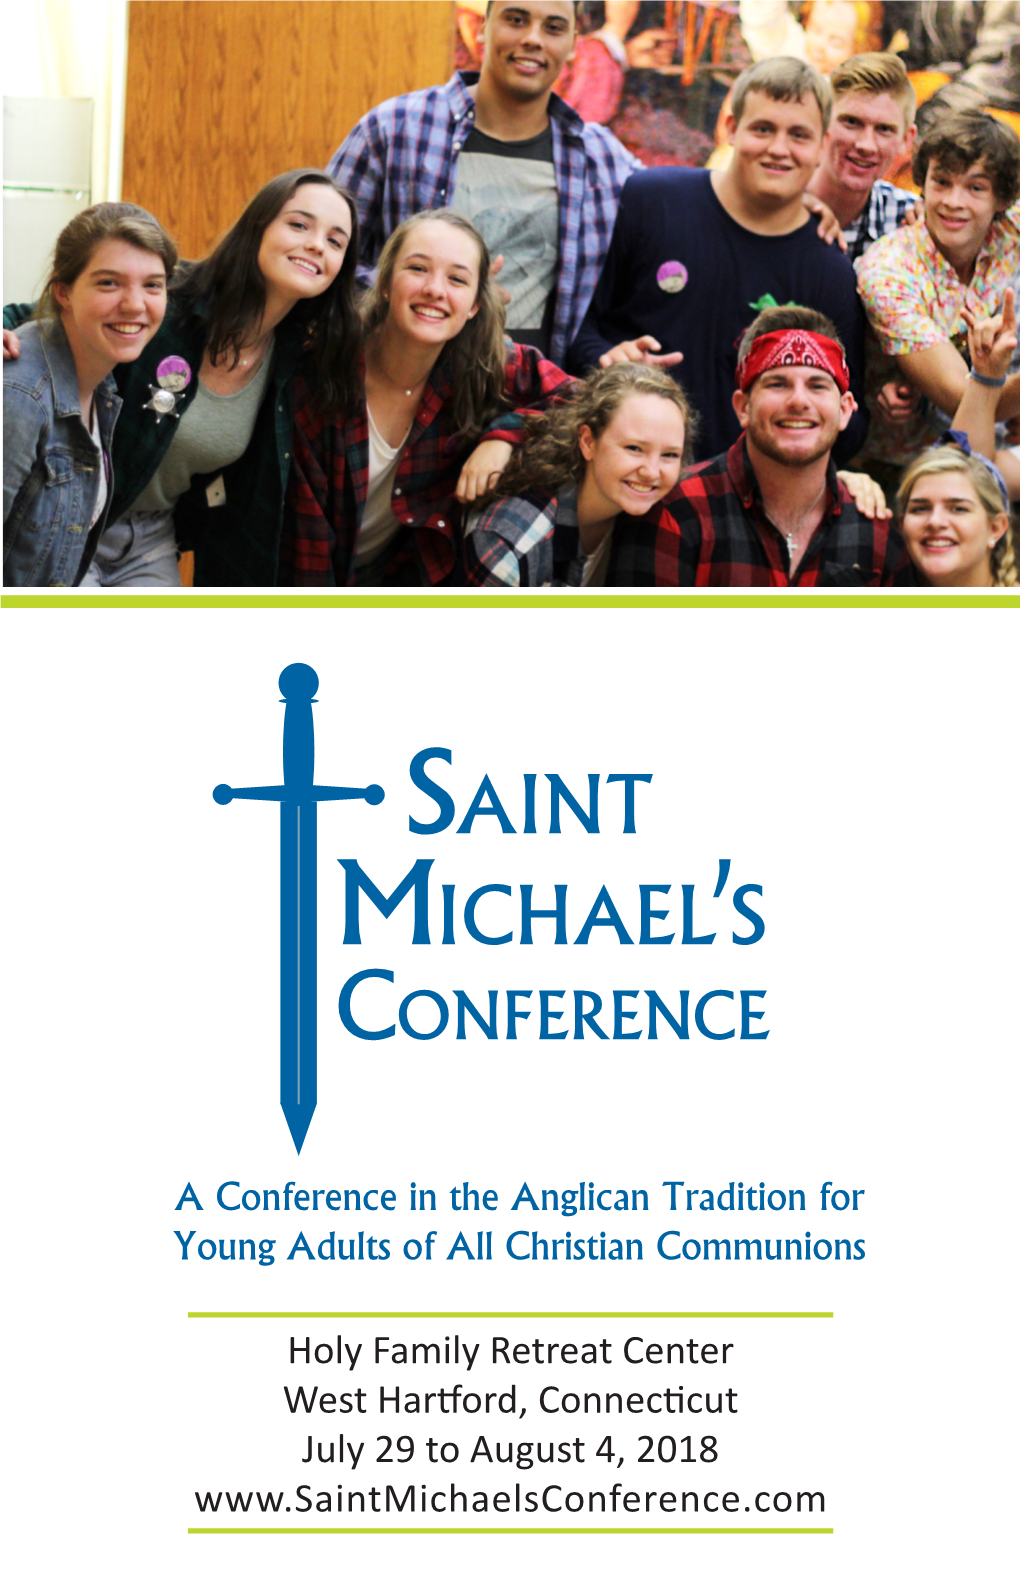 Saint Michael's Conference